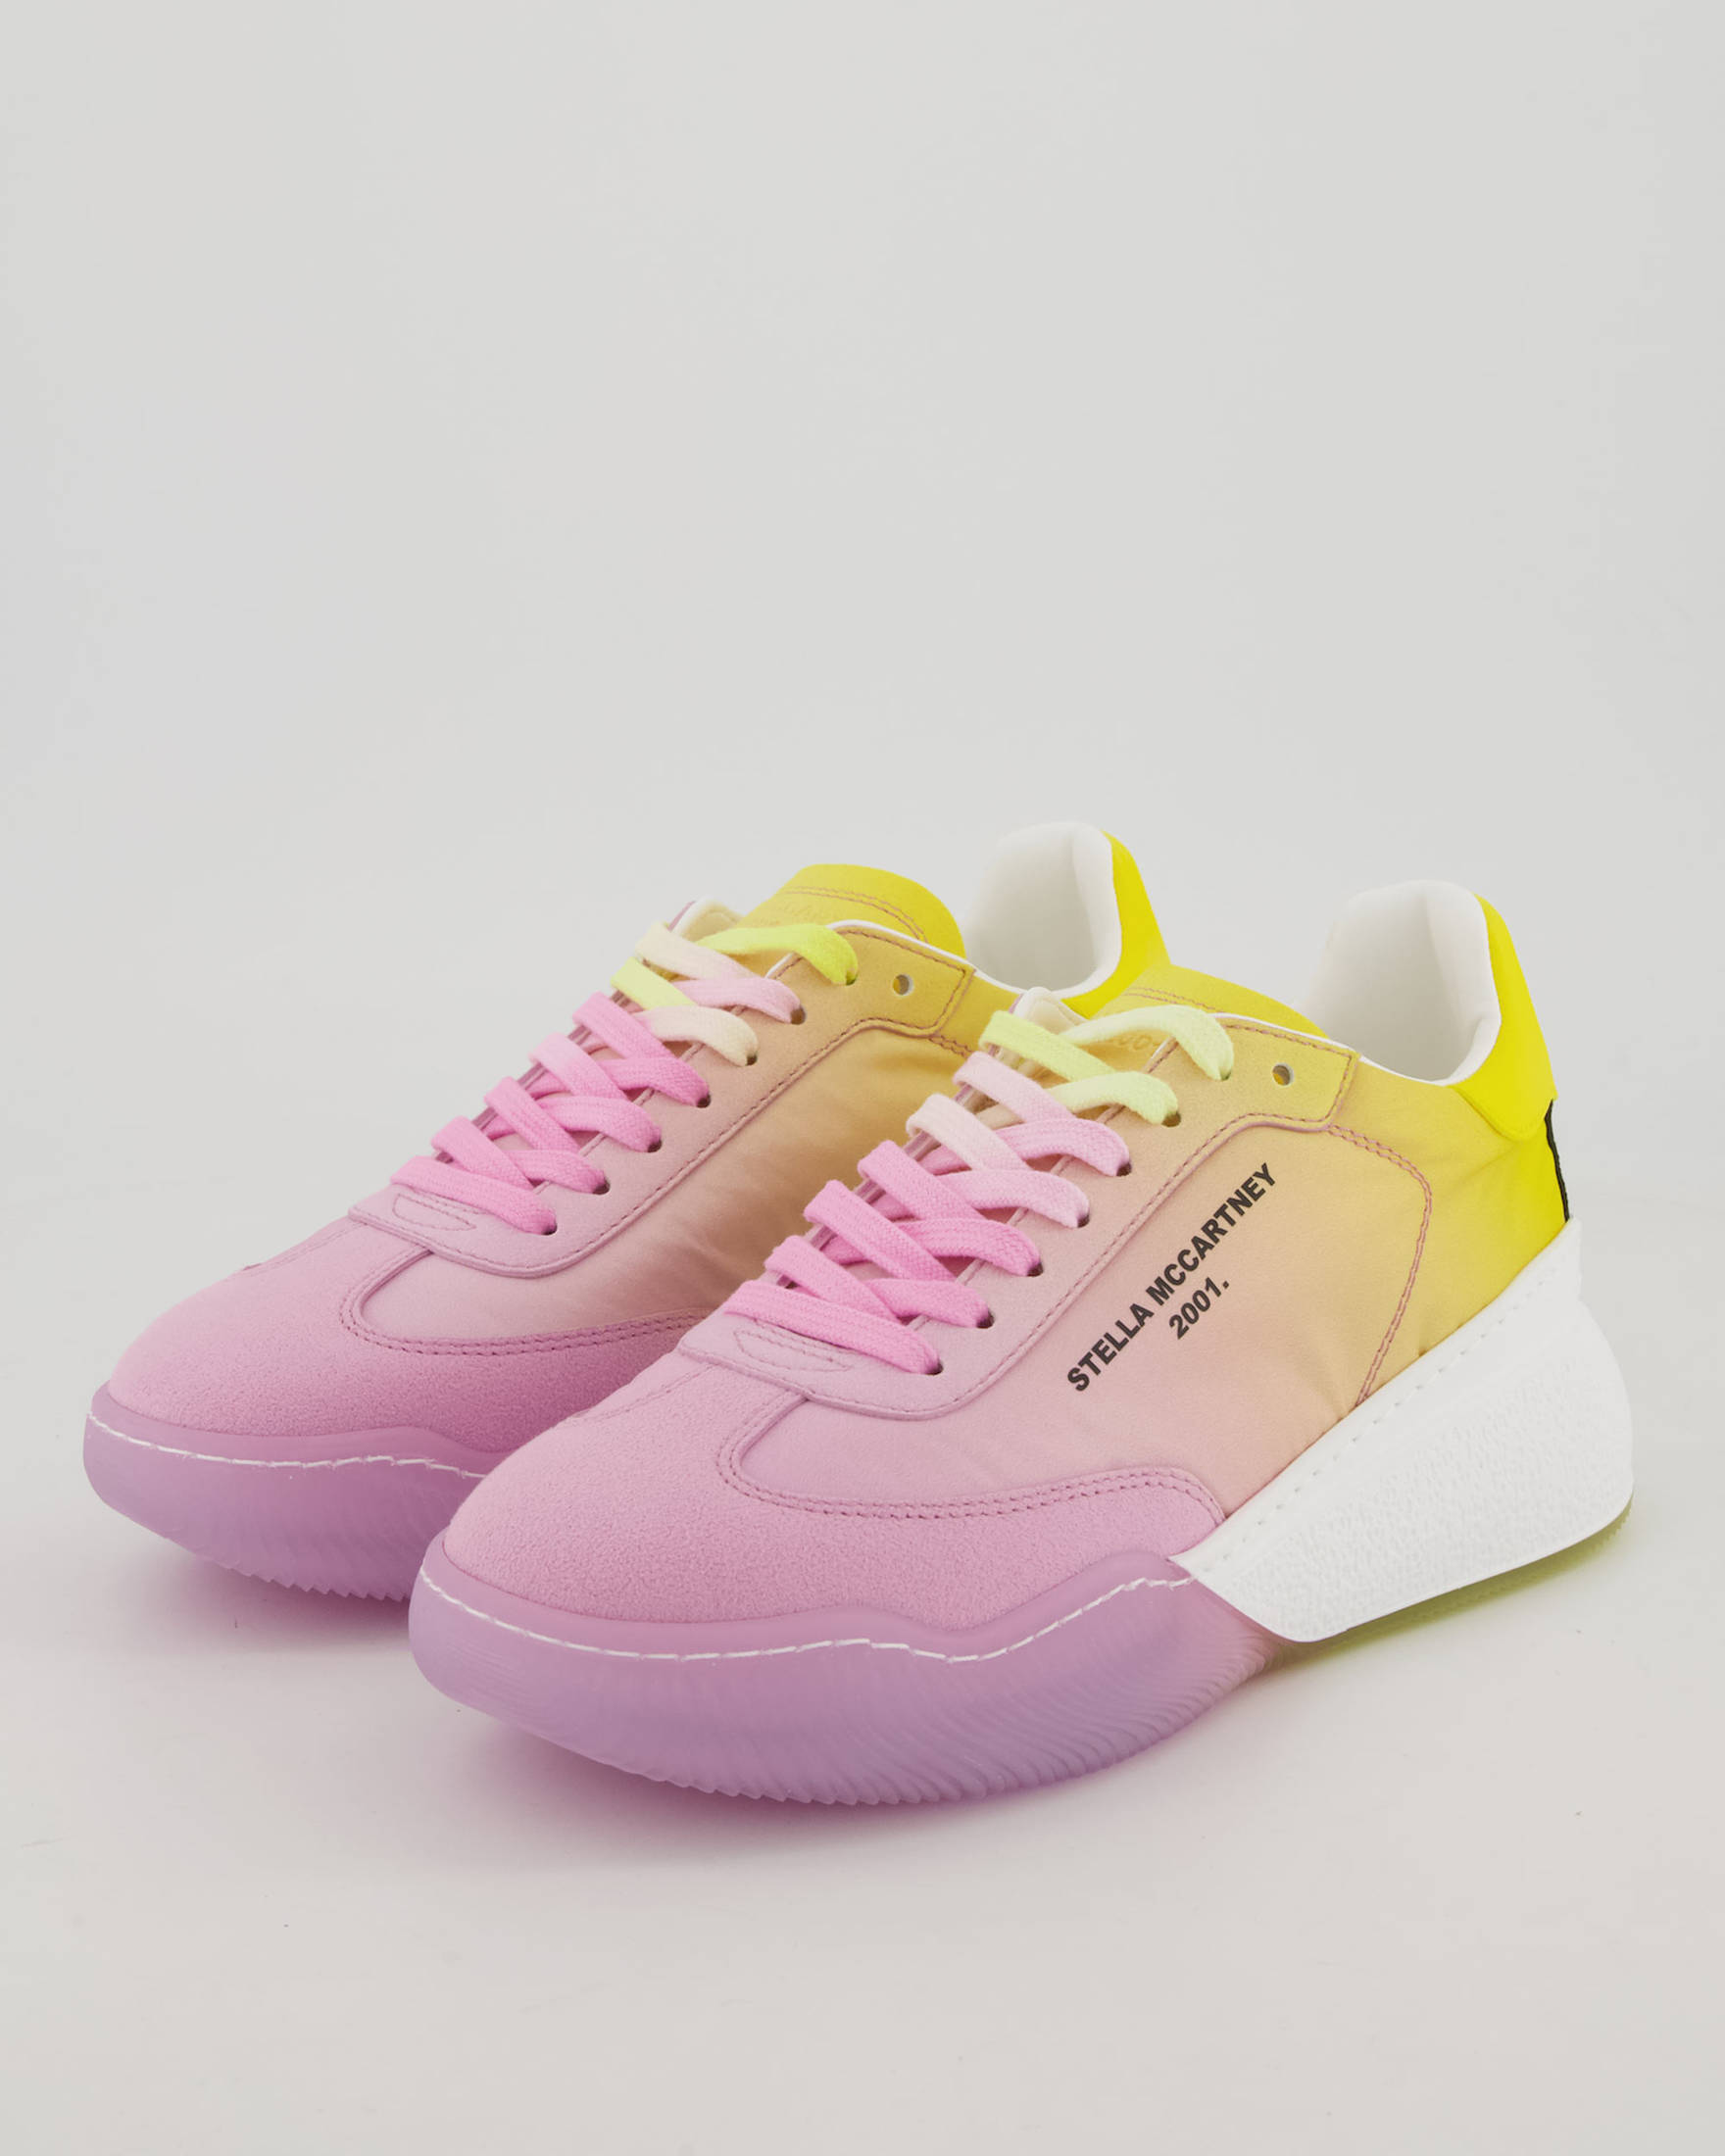 Damen Schuhe Flache Schuhe Schnürschuhe und Schnürstiefel Stella McCartney Synthetik Sneaker Loop Degrade Pink/Multi 